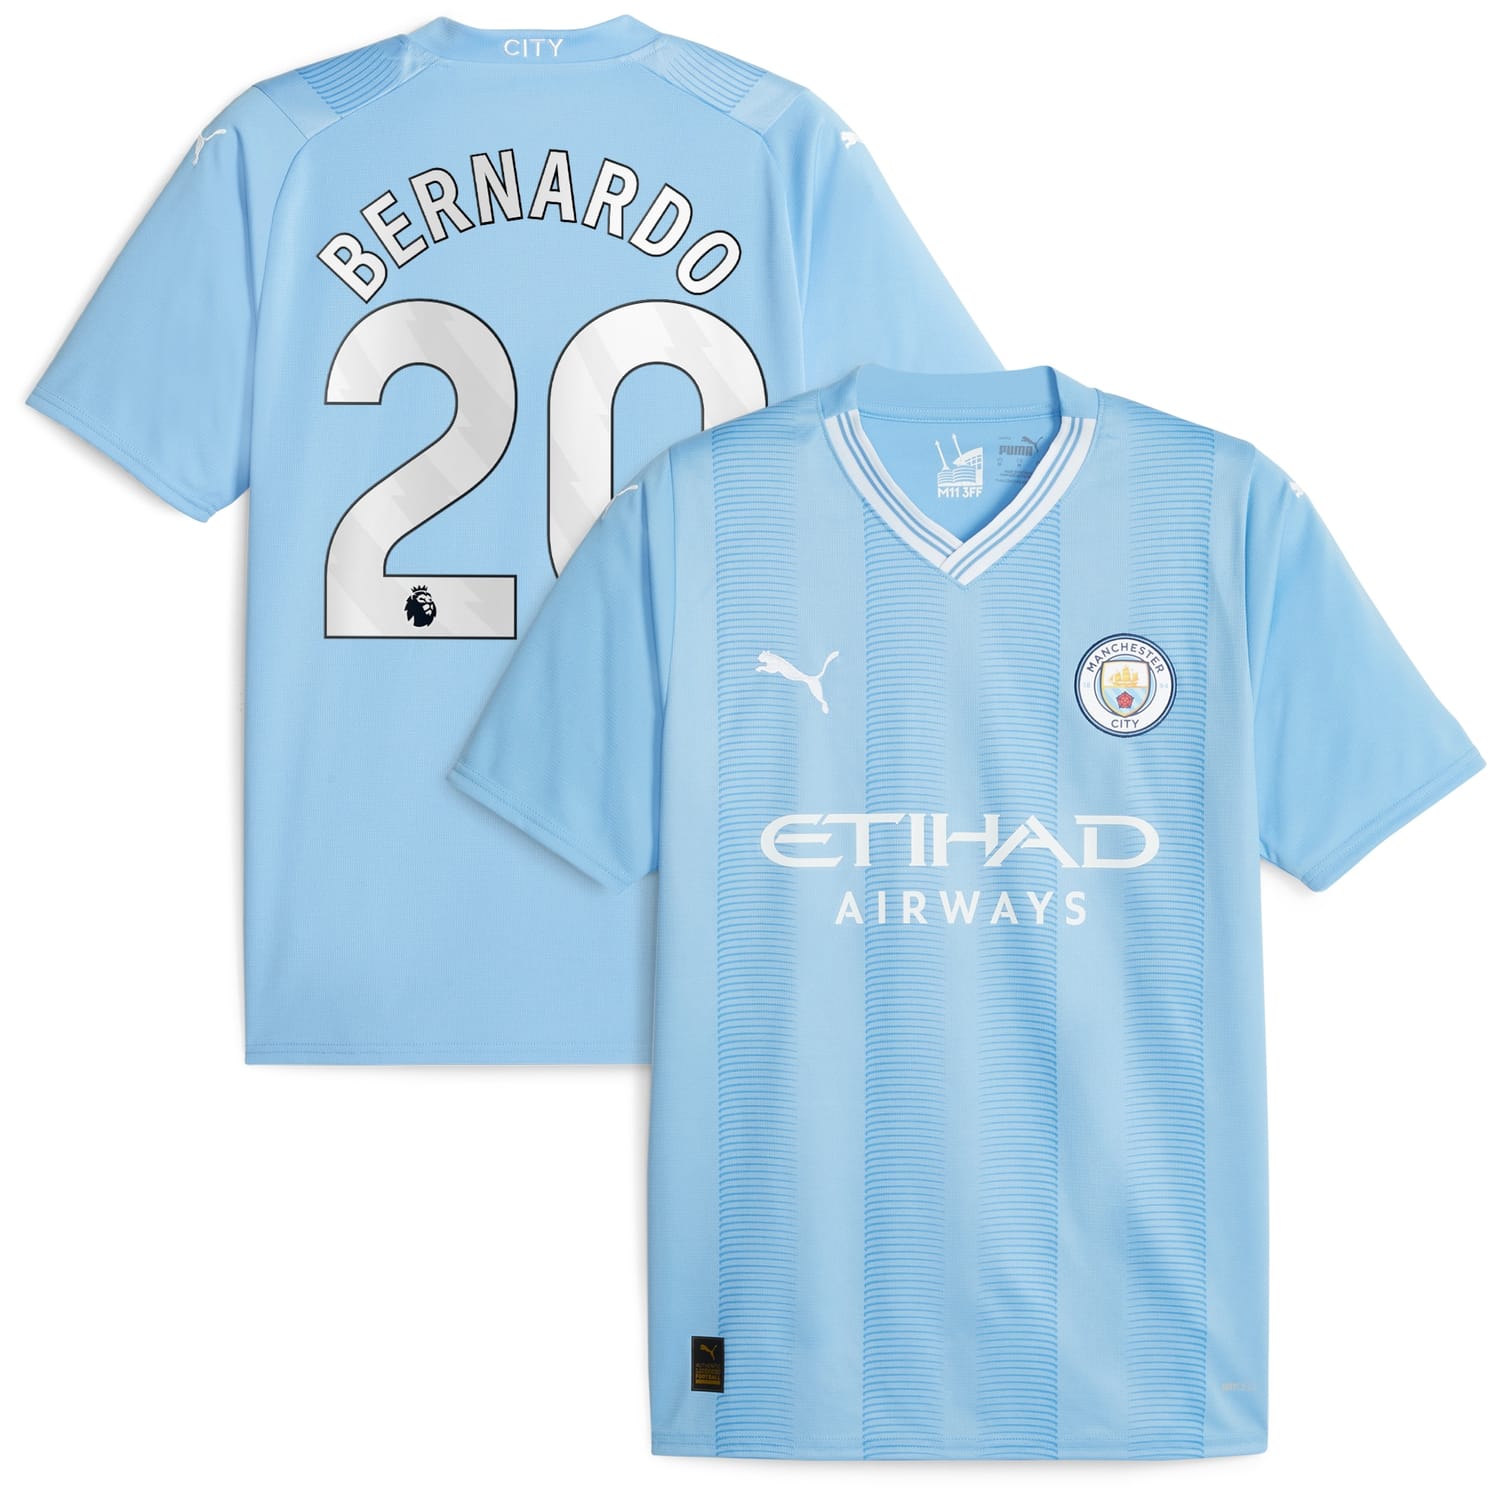 Premier League Manchester City Home Jersey Shirt Sky Blue 2023-24 player Bernardo Silva printing for Men